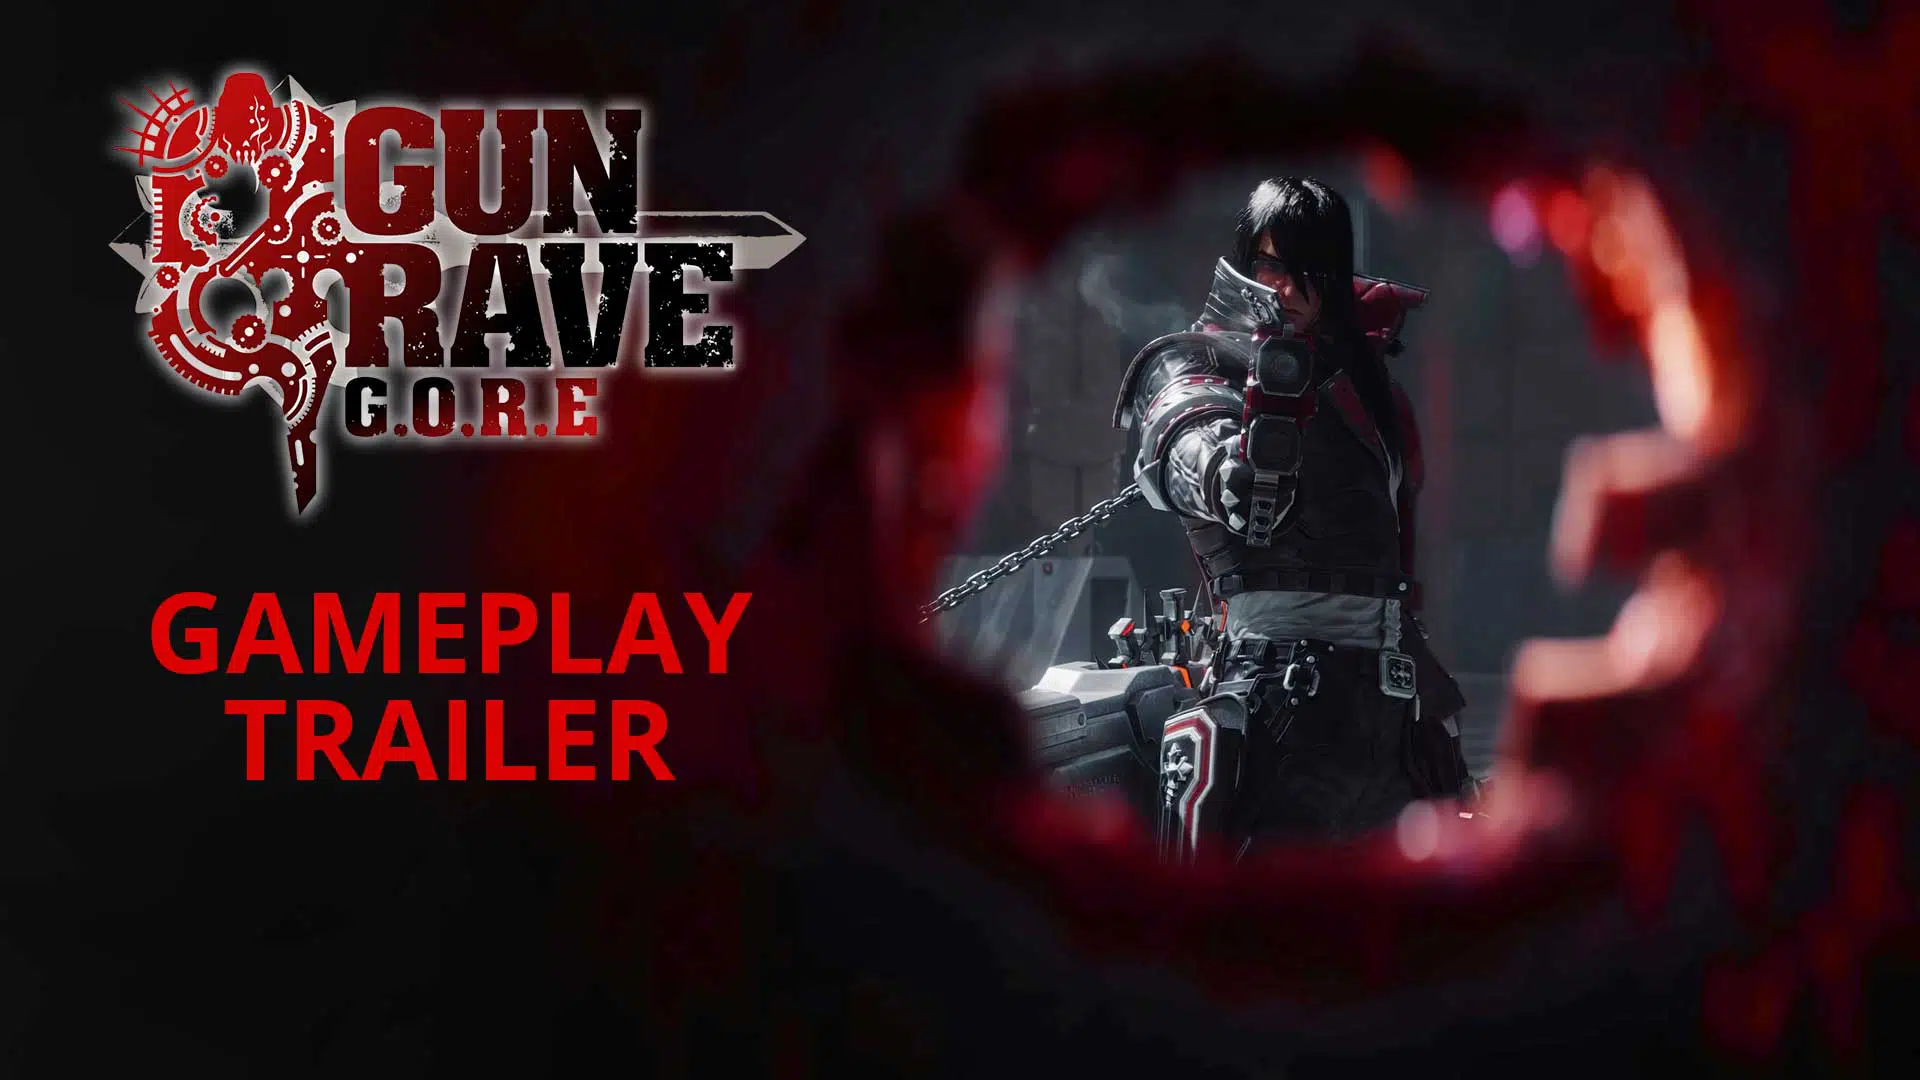 gungrave gore gameplay trailer